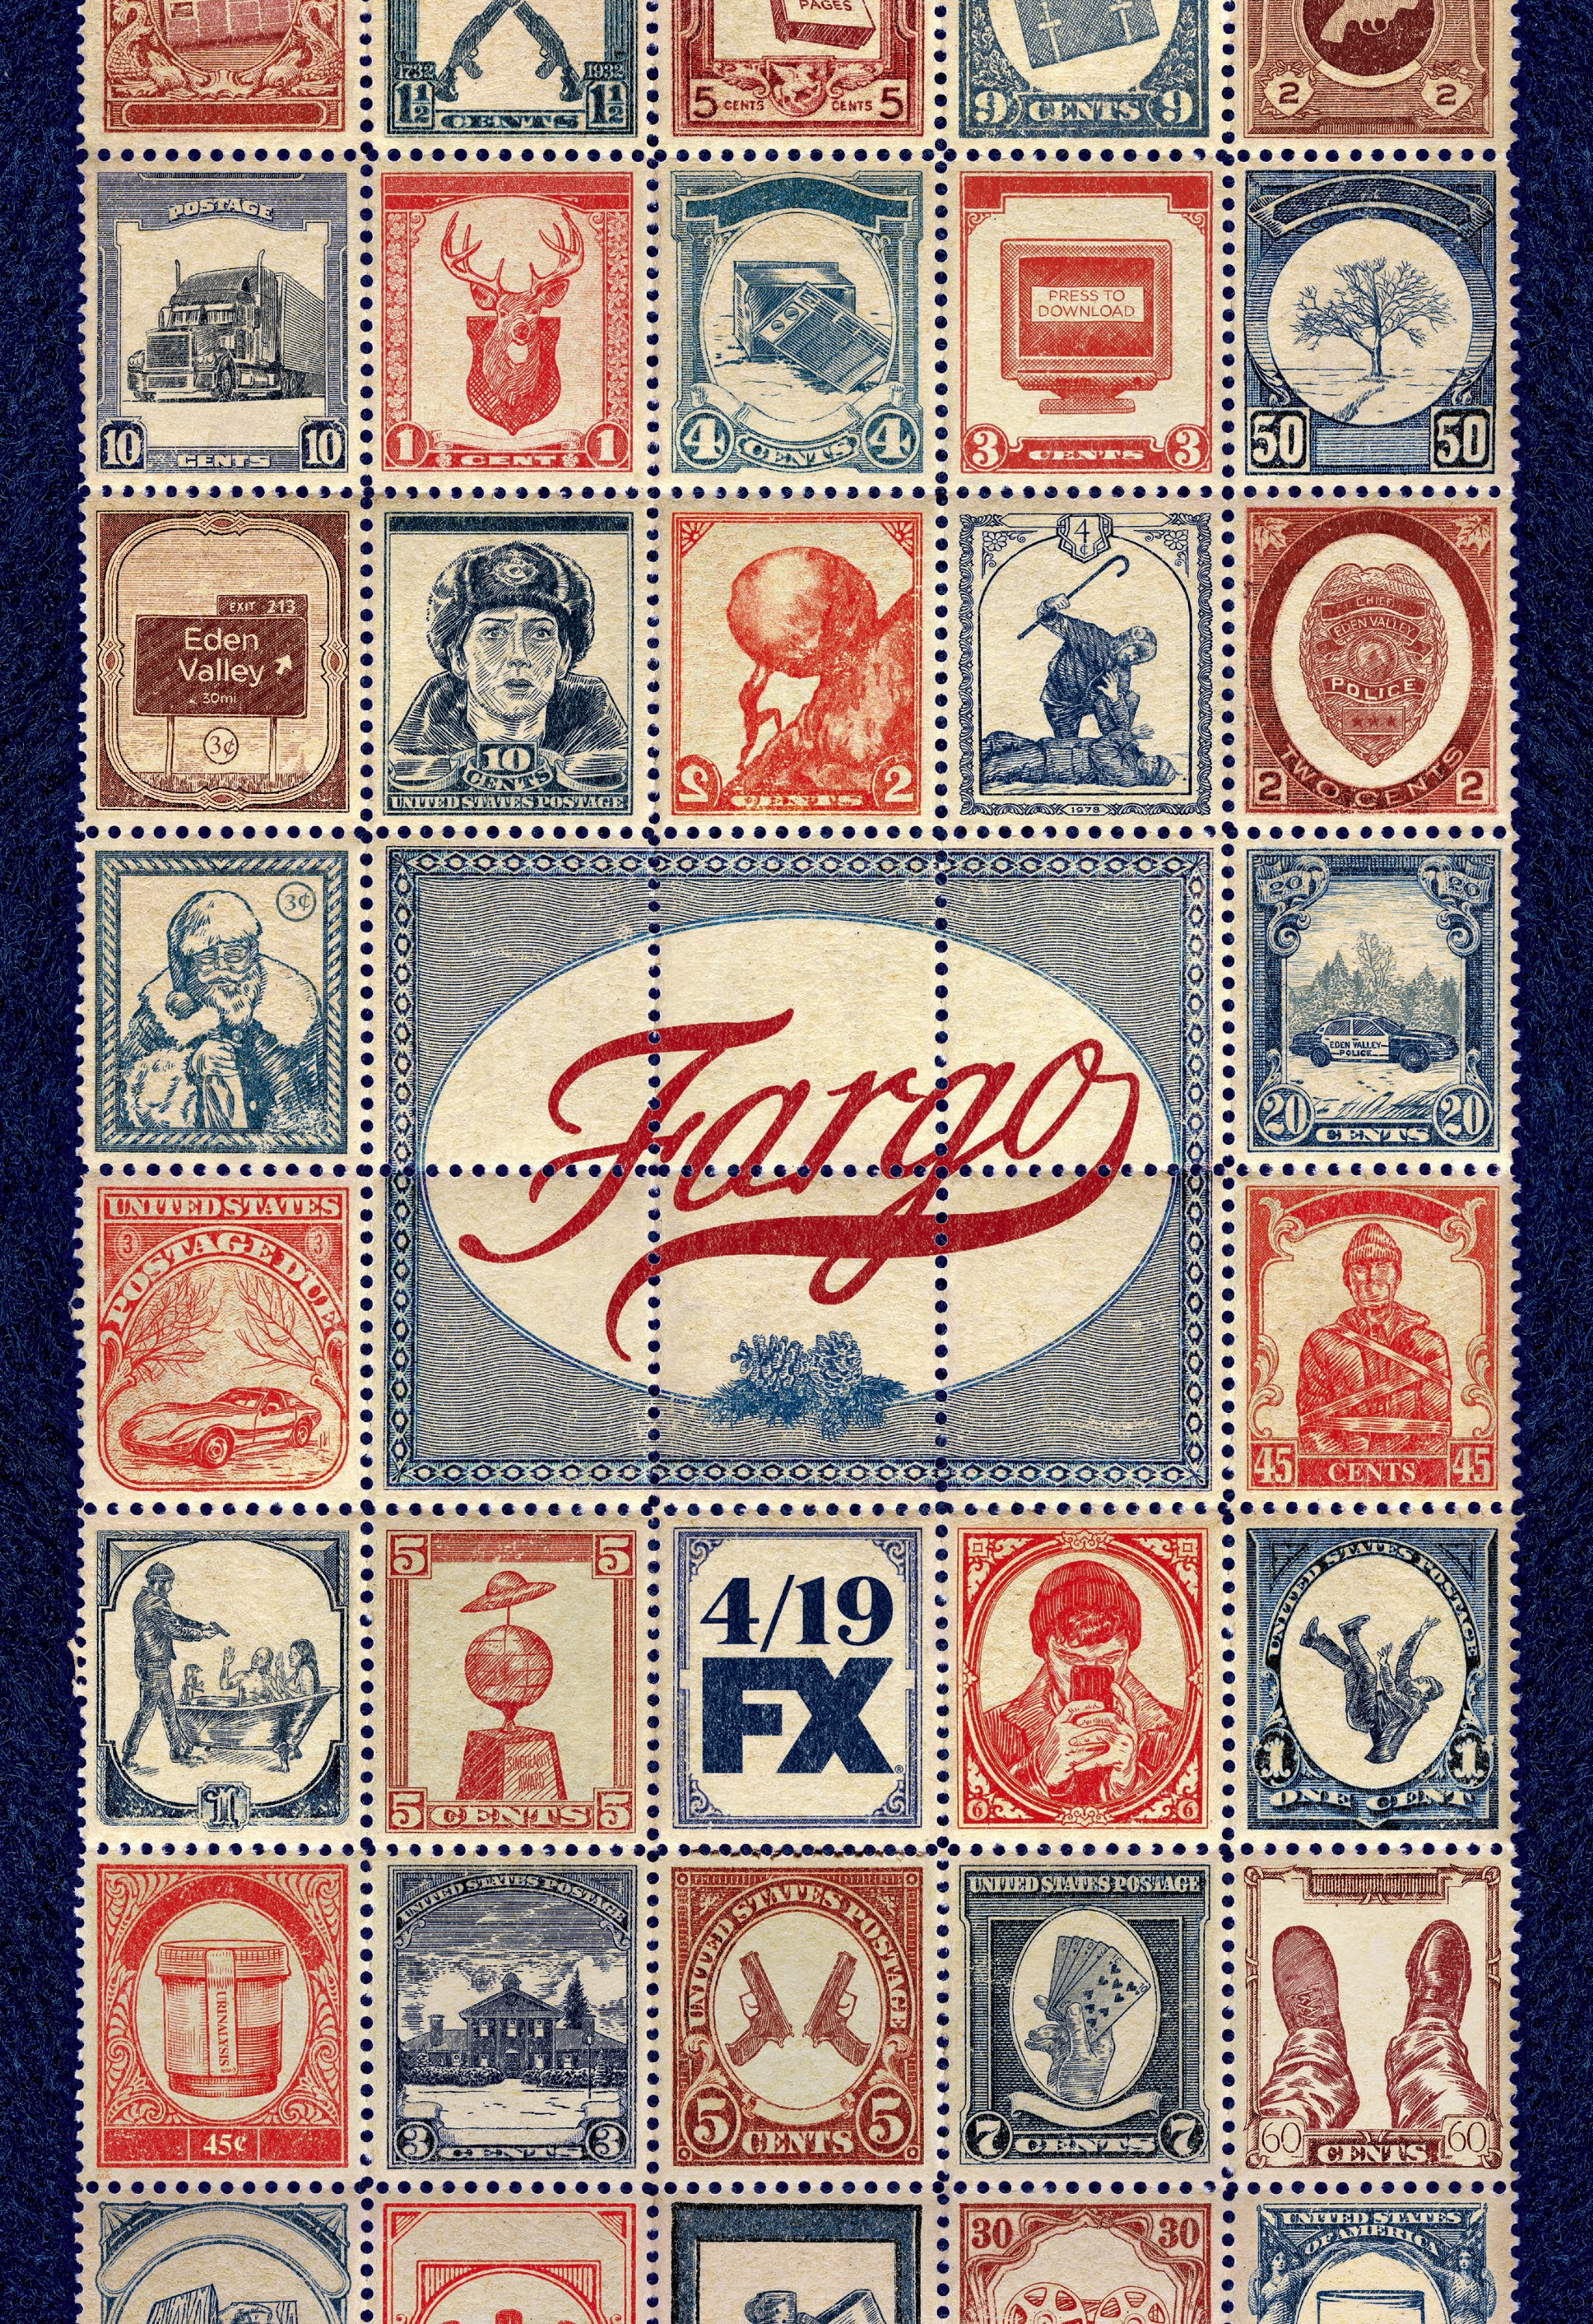 Mega Sized TV Poster Image for Fargo (#5 of 11)